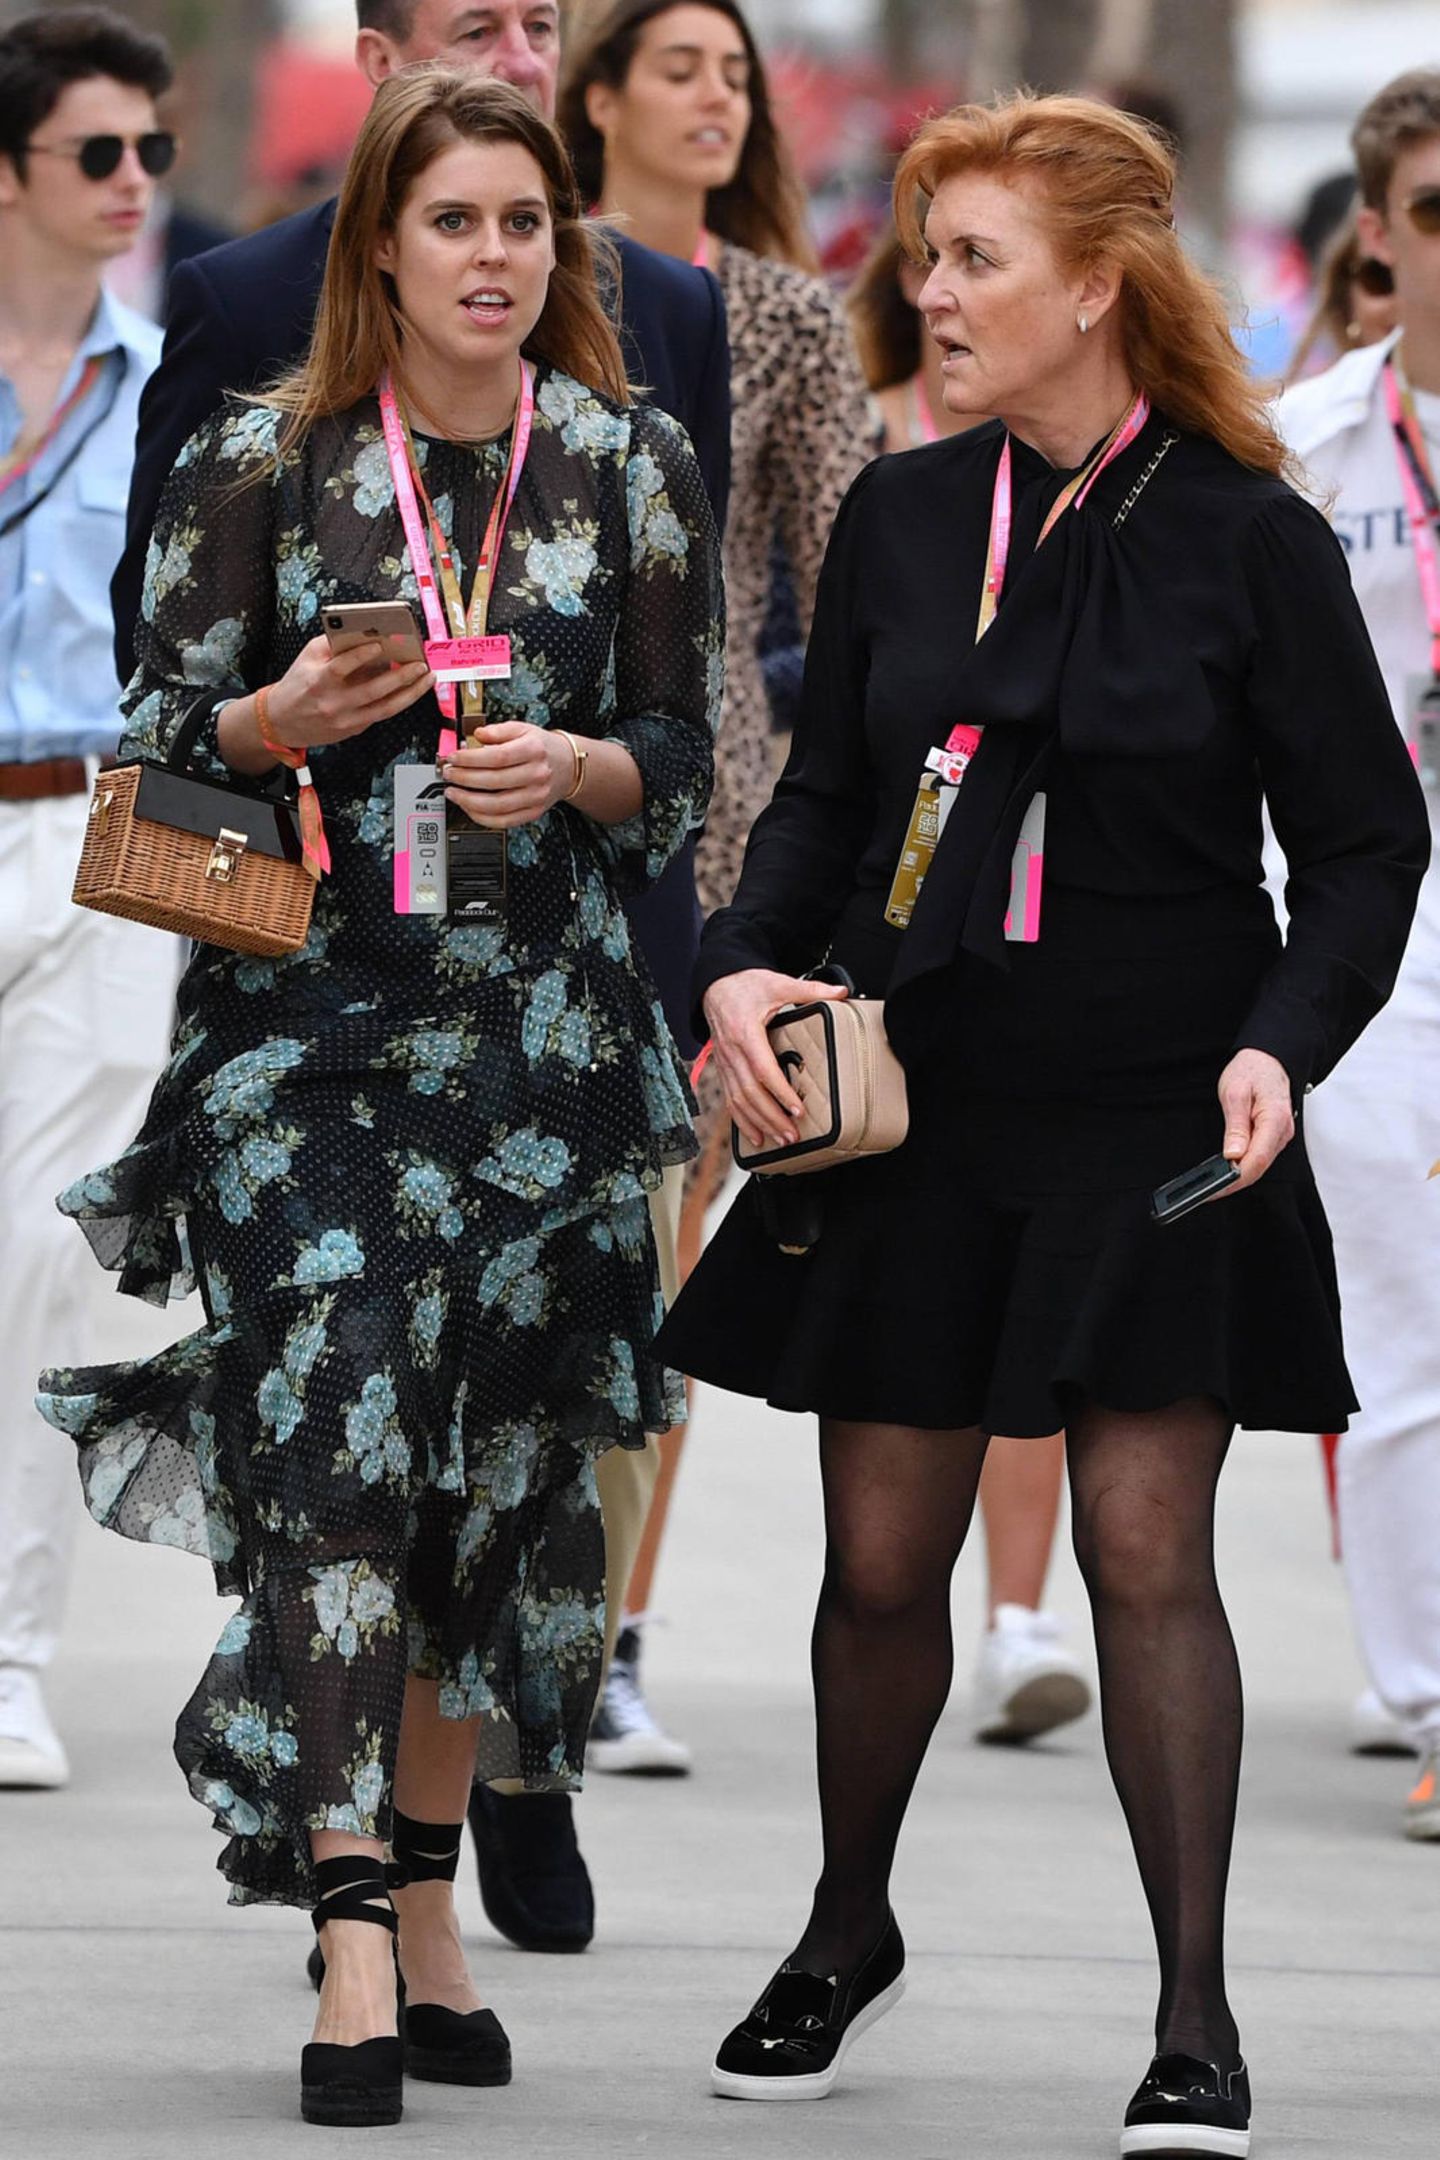 Bei diesem Anblick staunt sogar Mutter Sarah Ferguson! Prinzessin Beatrice besuchte am Wochenende den Großen Preis von Bahrain. Dabei baumelte ein echtes Schnäppchen an ihrem Handgelenk: Die Korbtasche ist von Zara und kostet nur 47 Euro. Kein Wunder also, dass Fergie sie so erstaunt anschaut – wer hätte das schon gedacht? 